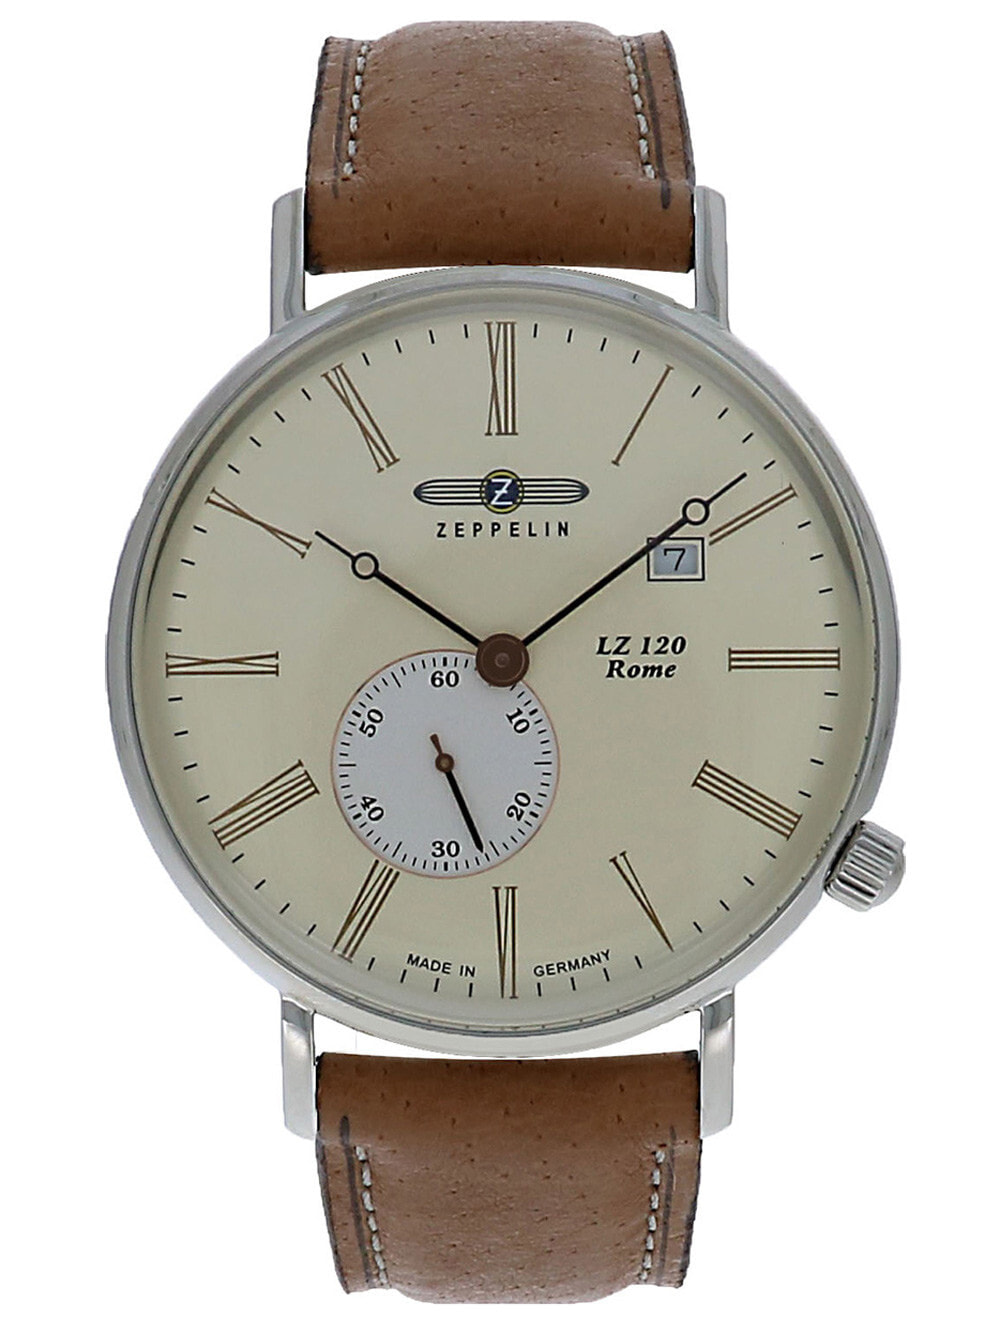 Мужские наручные часы с коричневым кожаным ремешком Zeppelin 7134-5 Rome Mens 41mm 5ATM